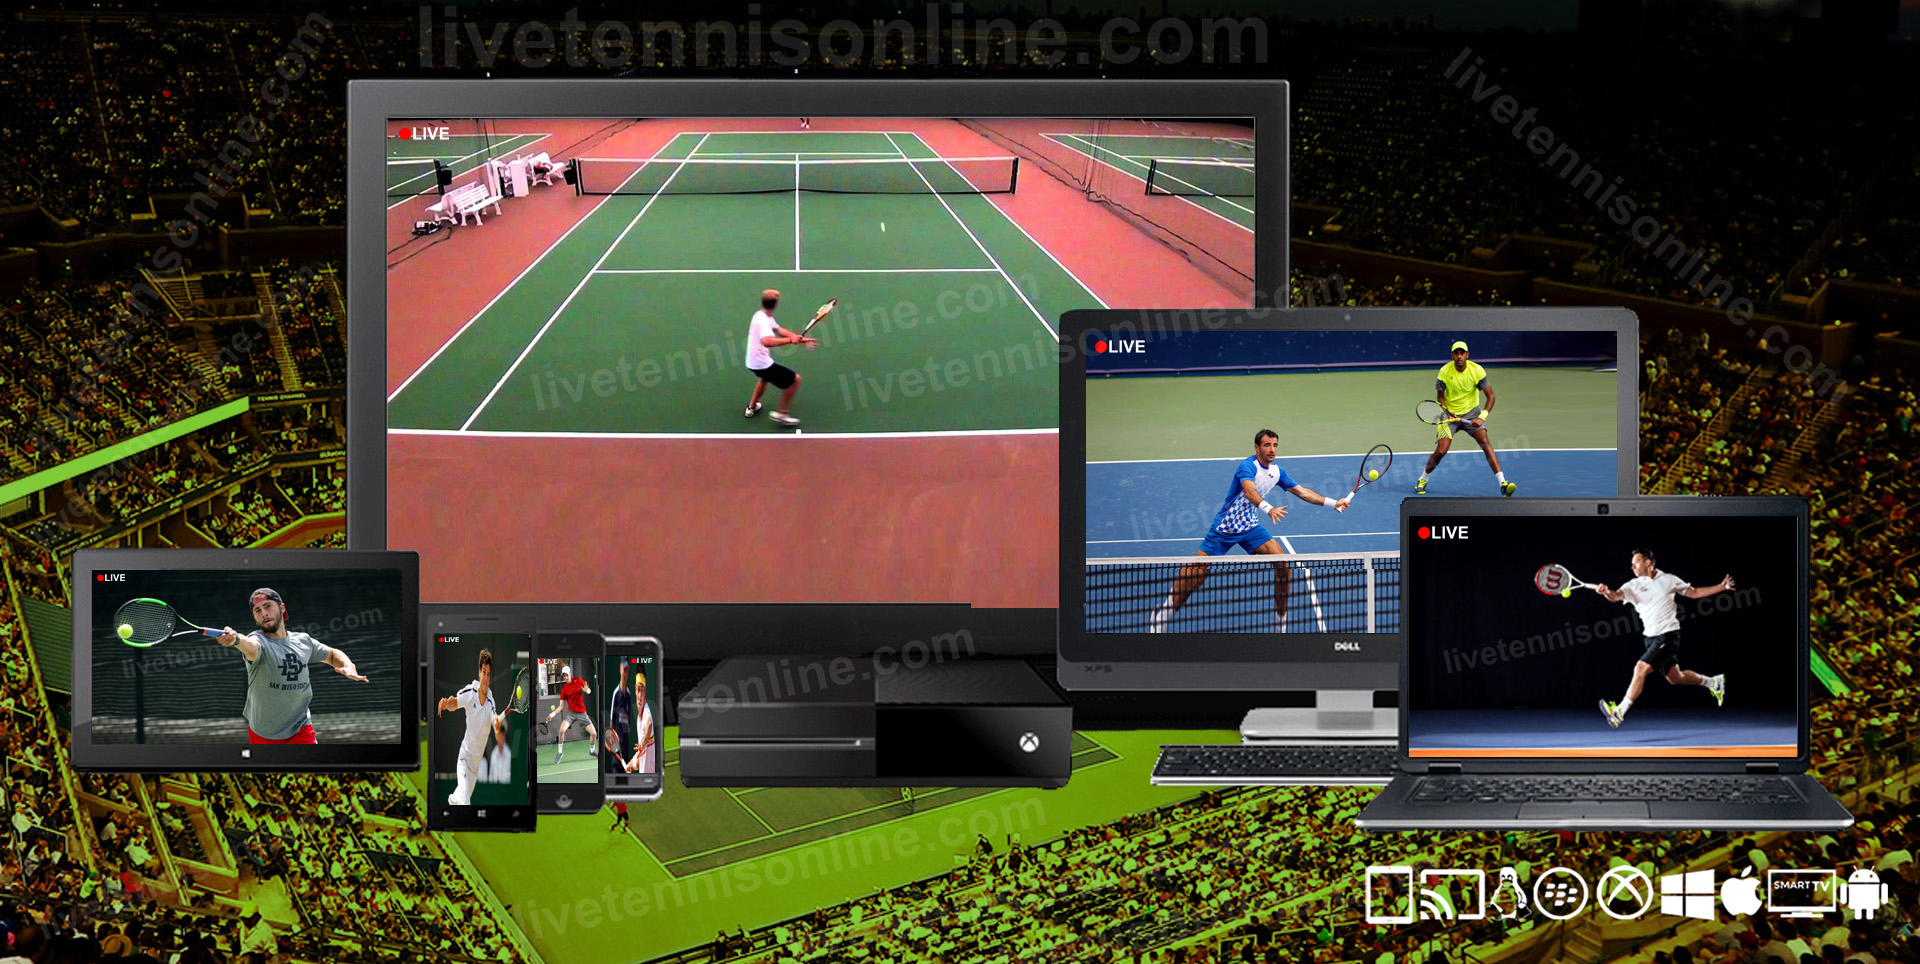 Watch Tennis Live Stream Online 2020 